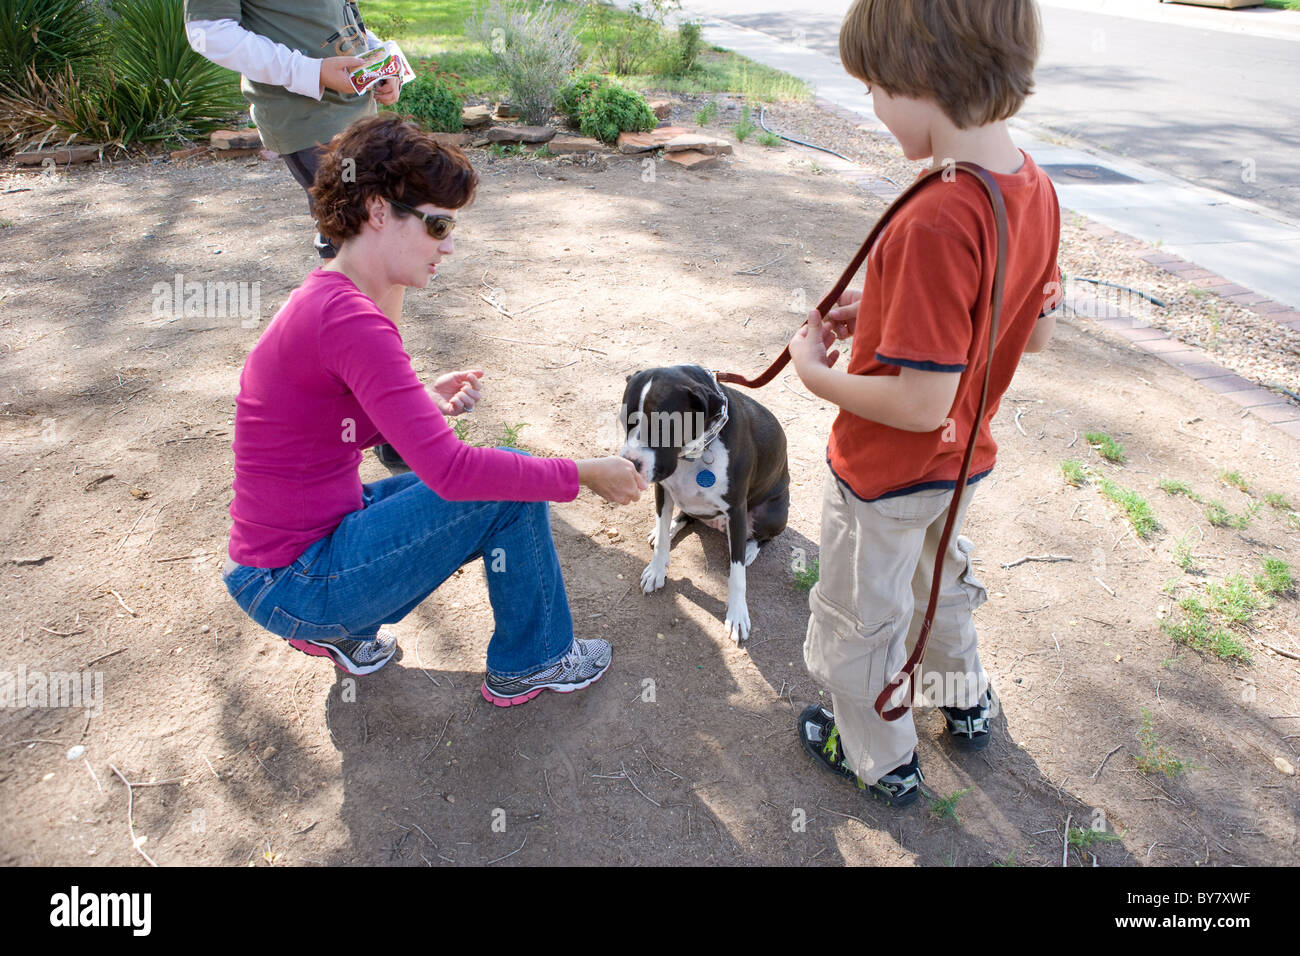 Entraîneur de chien travaillant avec garçon de huit ans sur la façon d'entraîner son chien à s'asseoir, rester, et marcher sans tirer sur la laisse. Banque D'Images